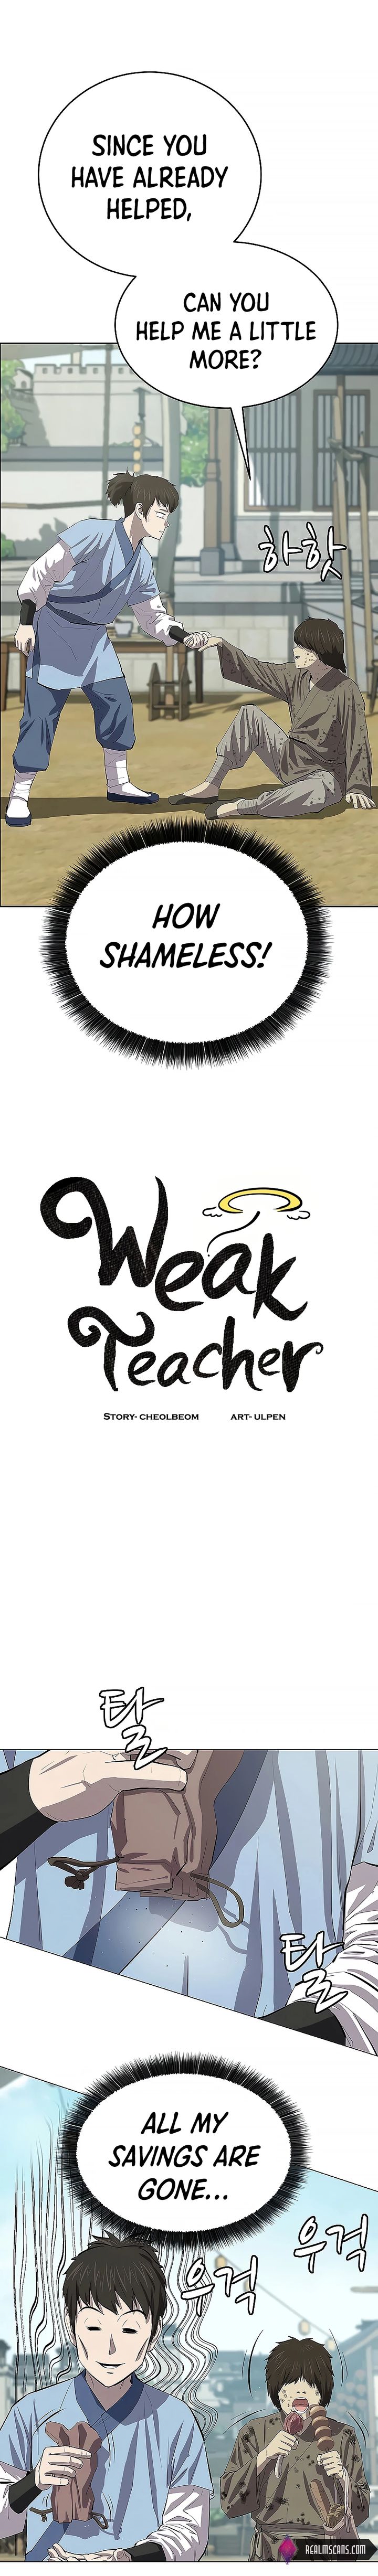 weak_teacher_78_11